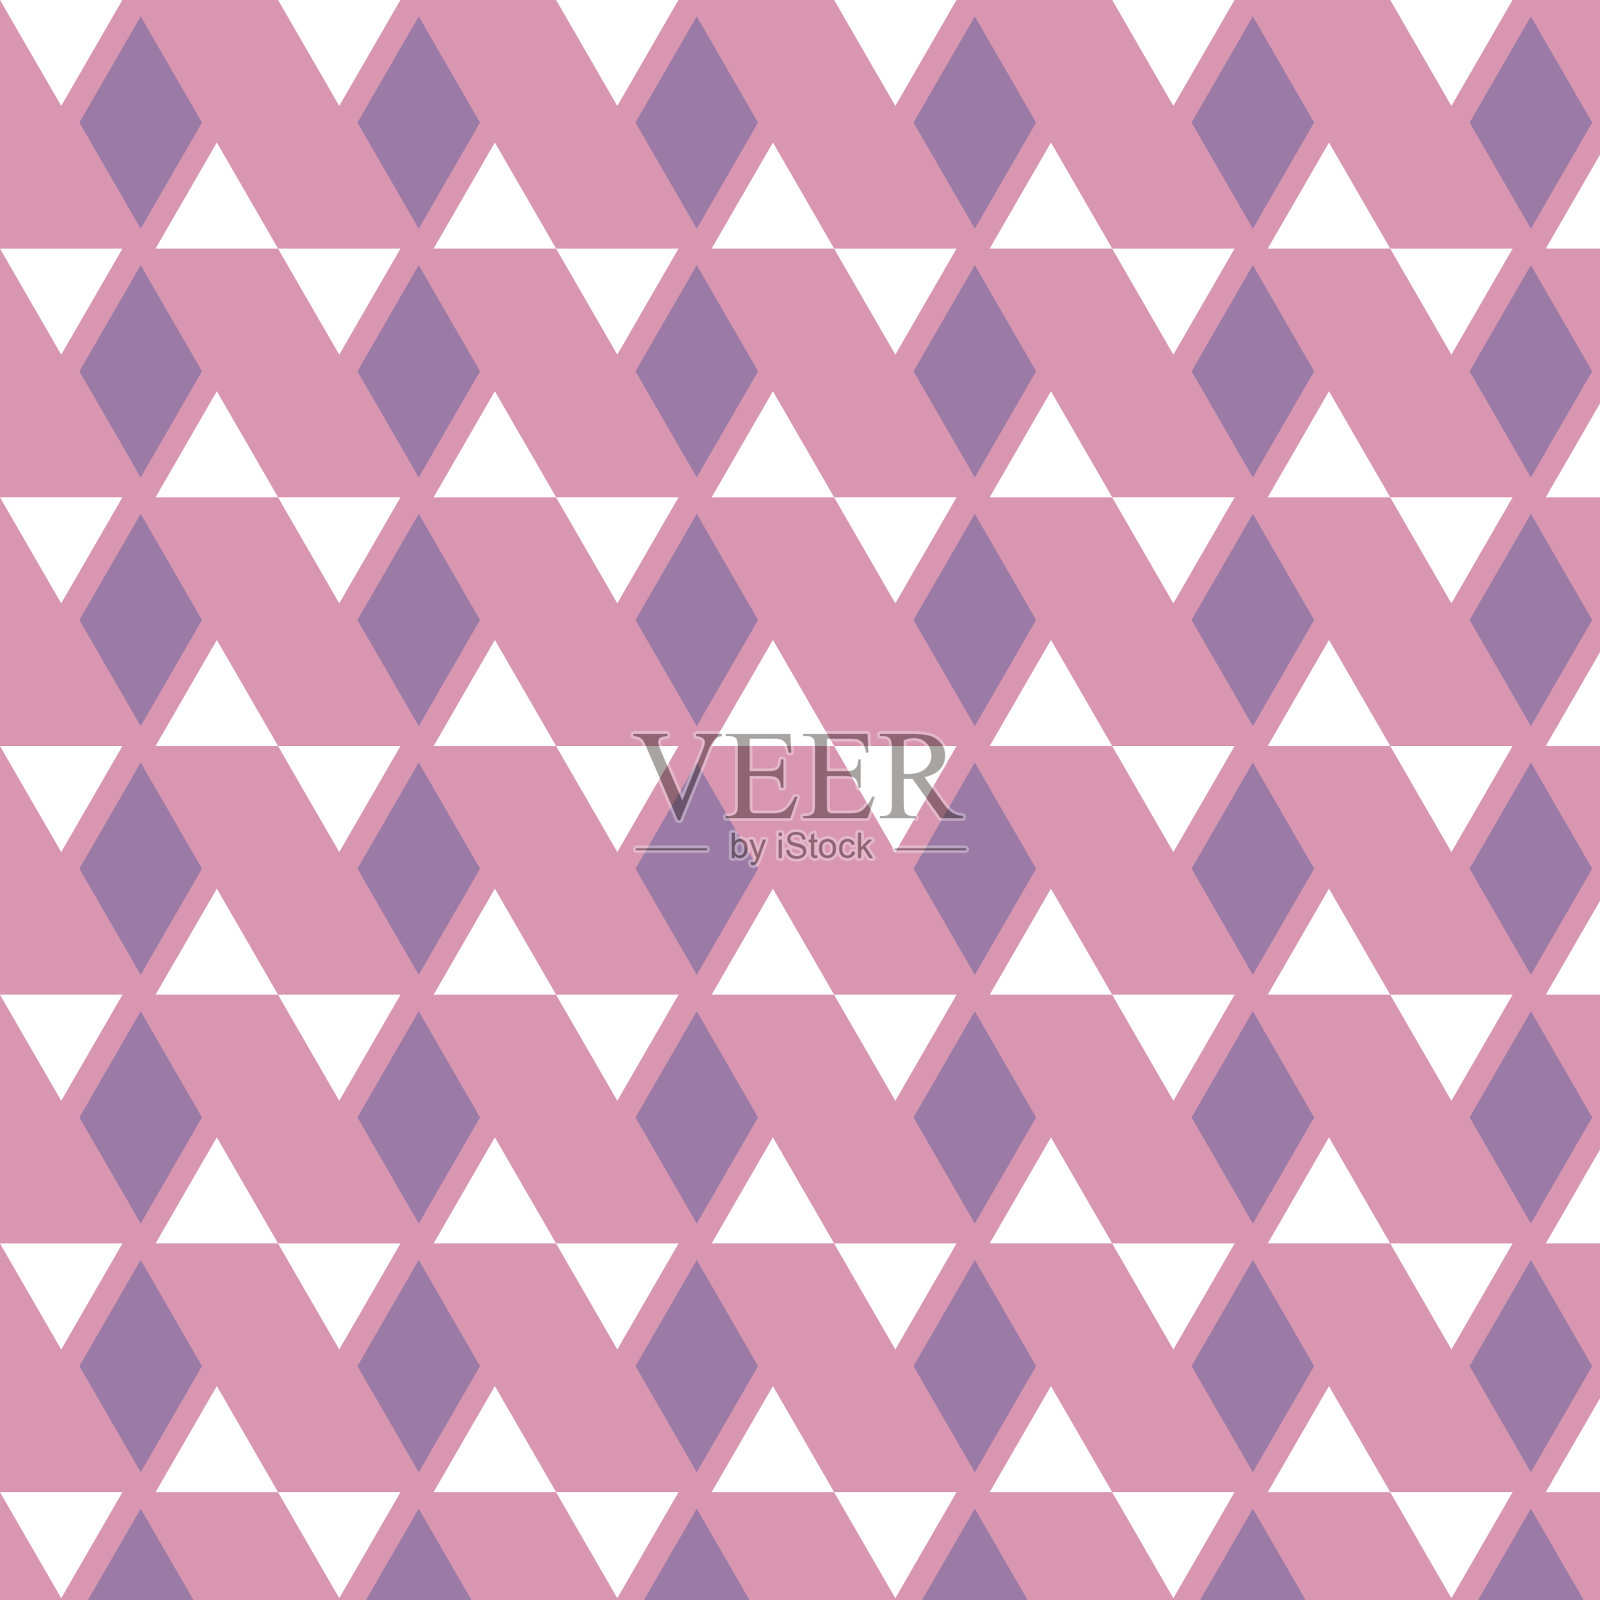 紫色菱形和白色三角形图案在粉红色的背景插画图片素材